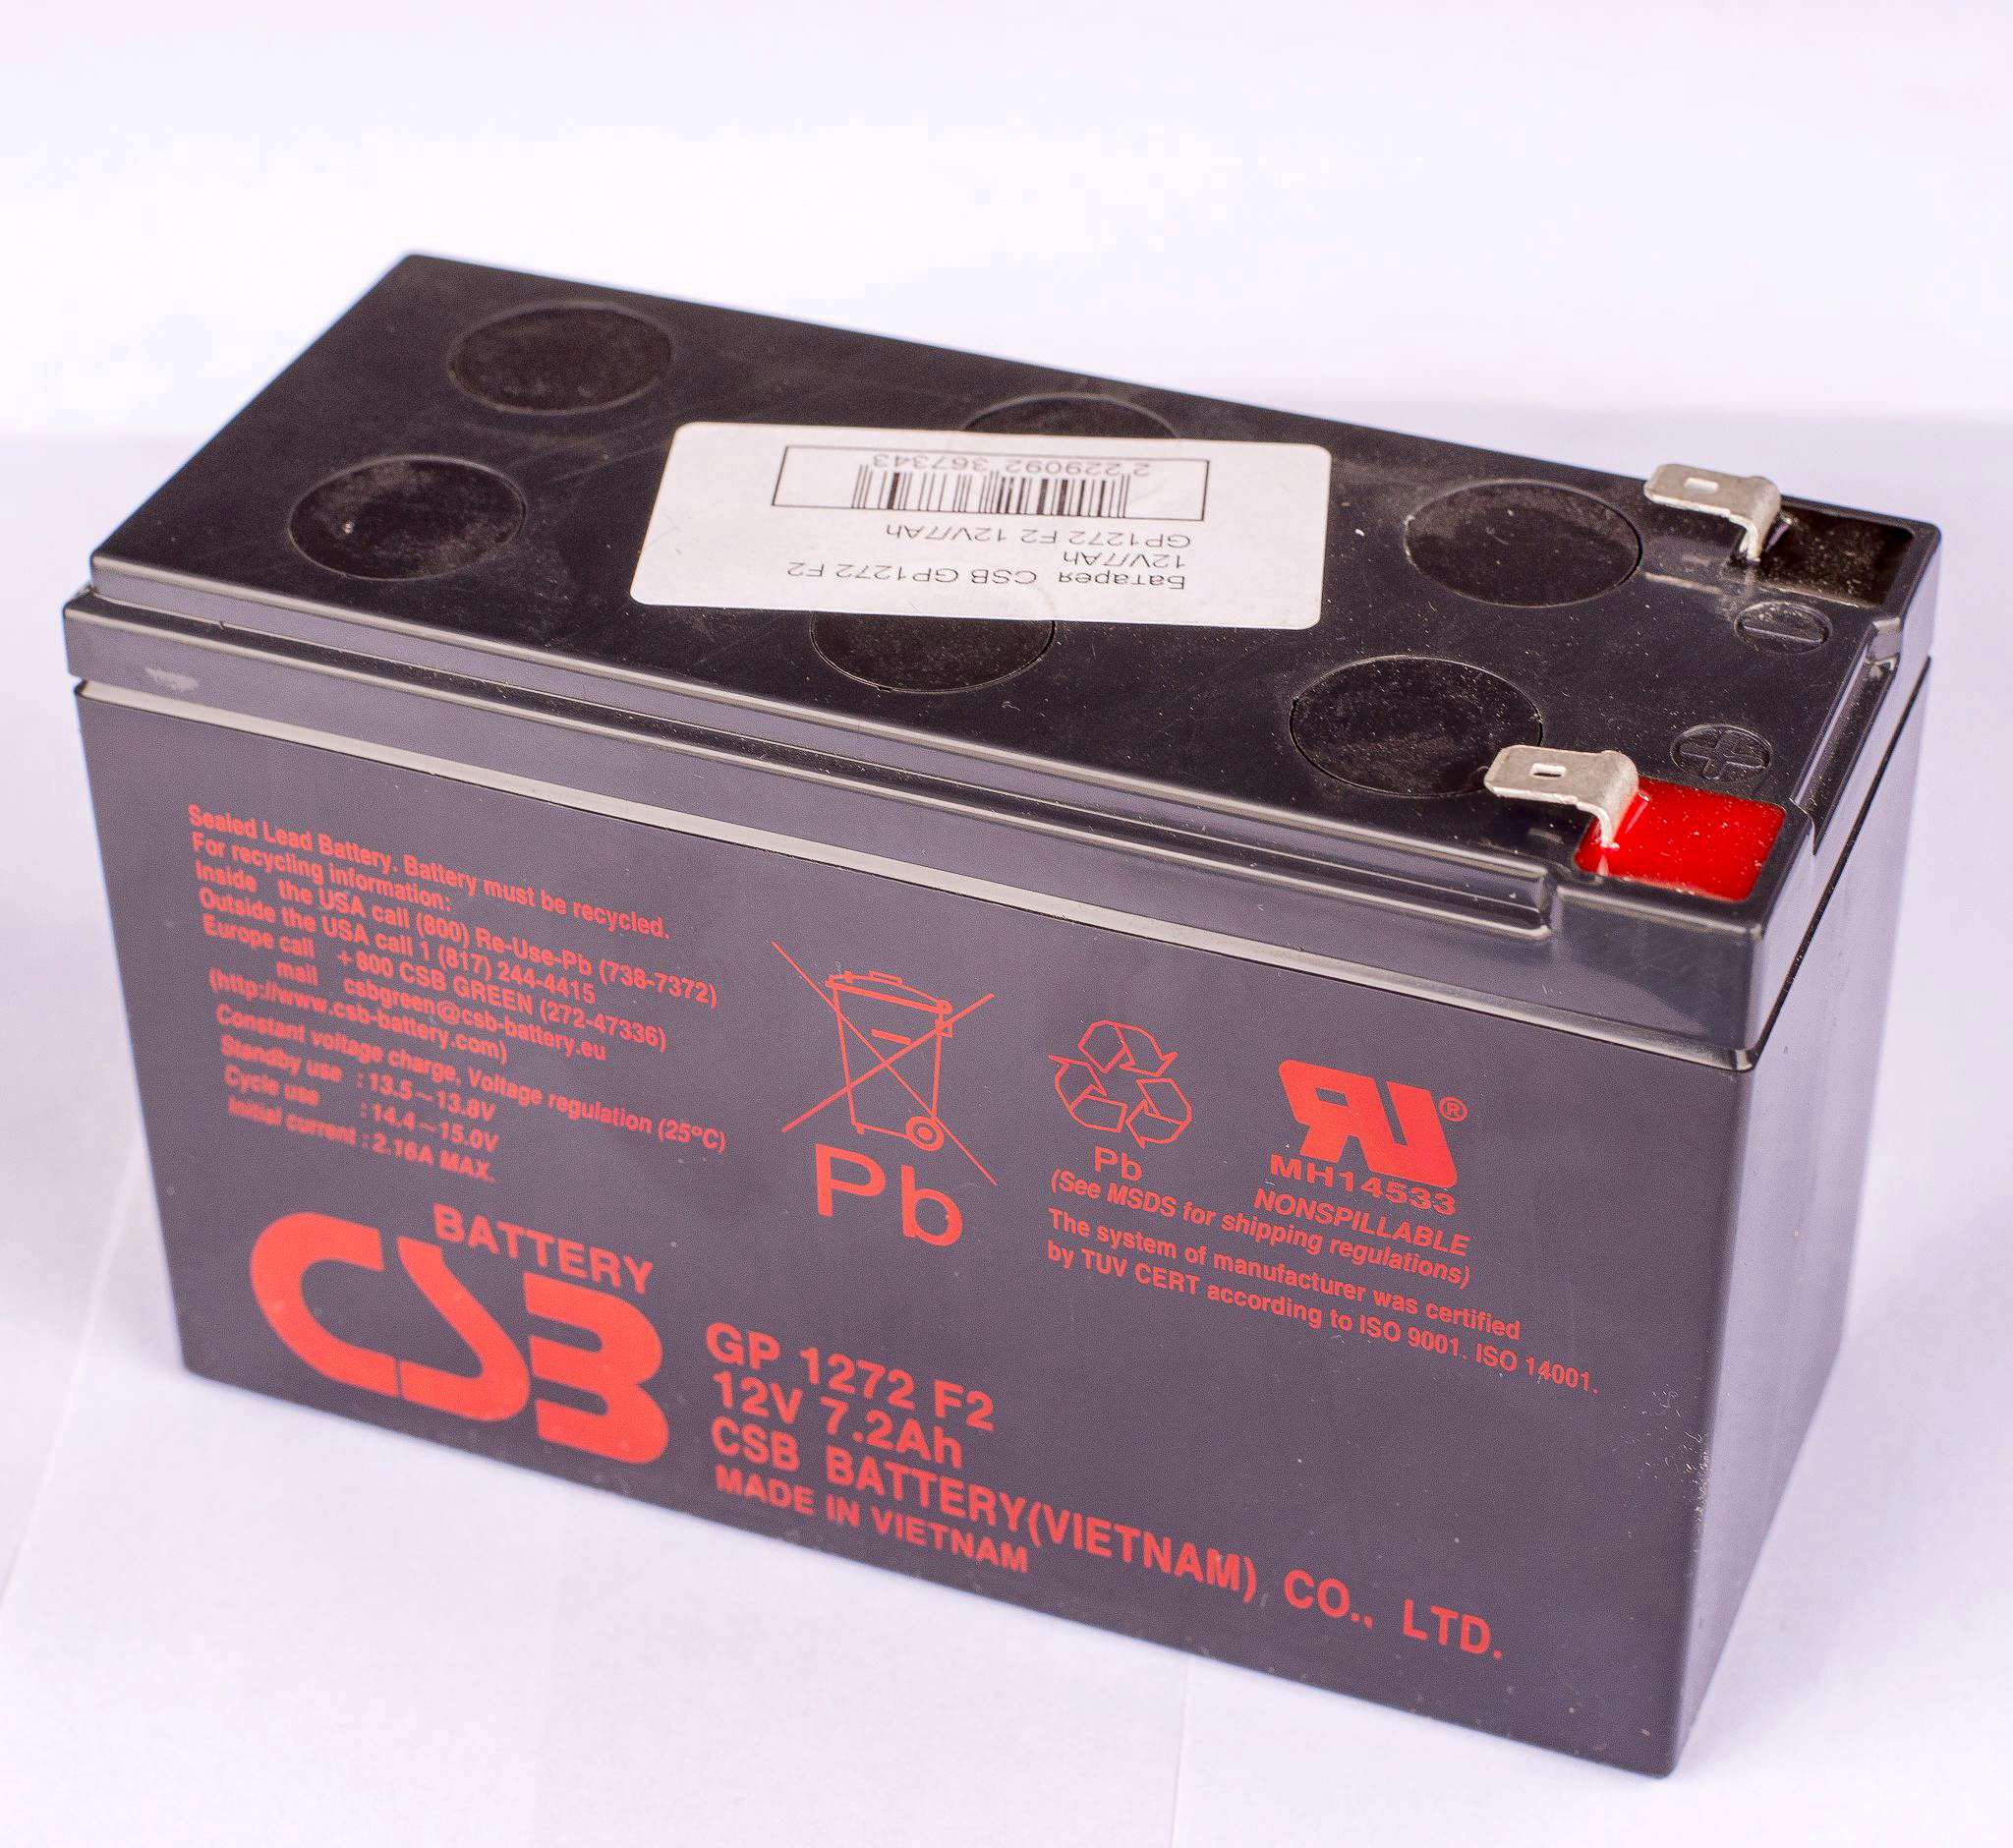 Gp1272 f2 12v. Аккумуляторная батарея для ИБП CSB GP 1272 f2 12v 7.2Ah. Аккумуляторная батарея CSB gp1272 f2. Батарея аккумуляторная CSB GP 1272 f2 12в 7.2а/ч. Батарея аккумуляторная CSB gp1272 (12v/7.2Ah).